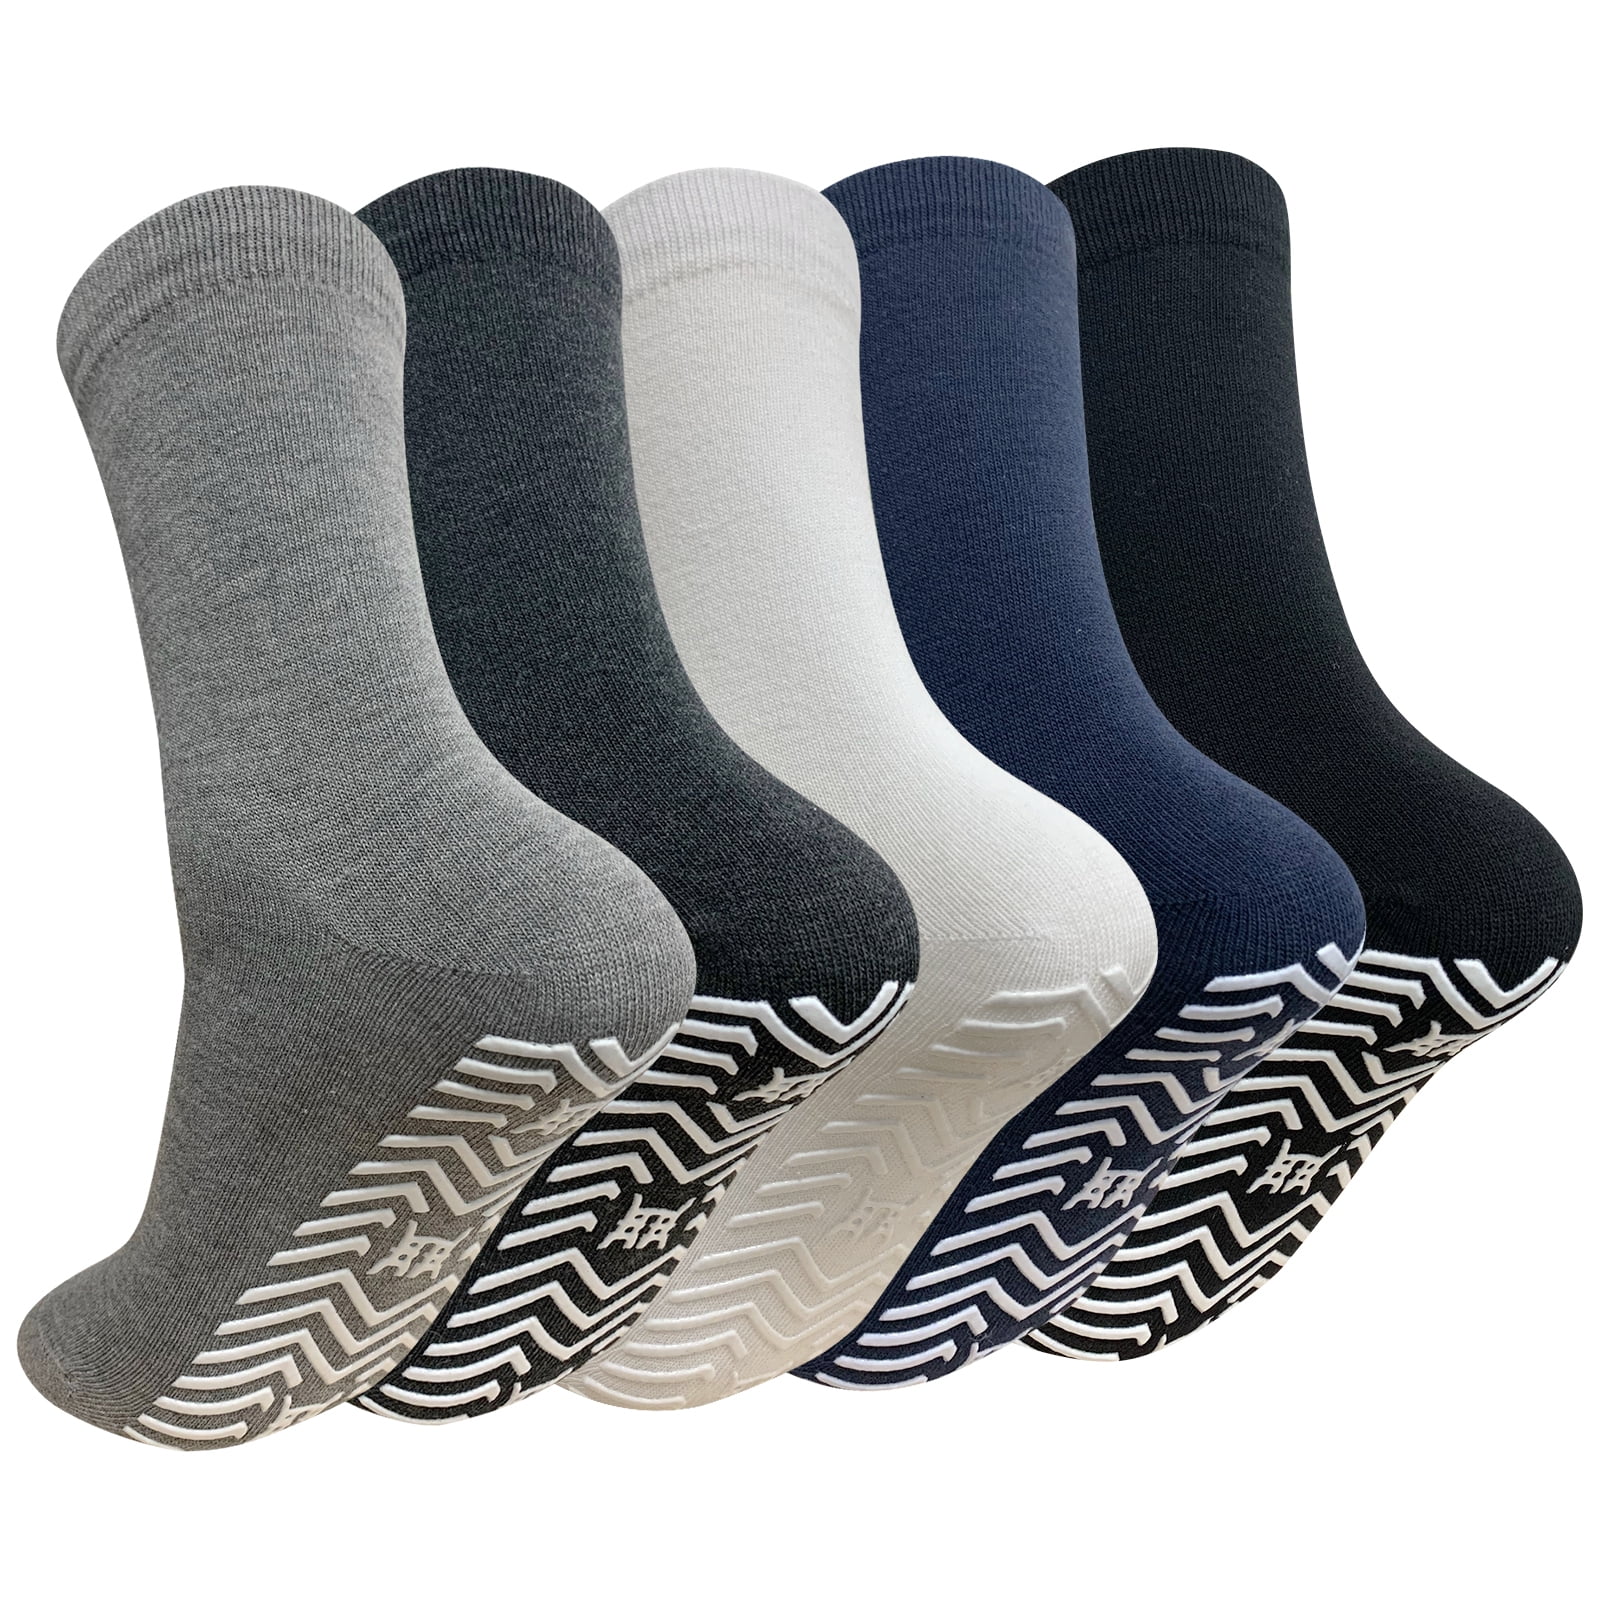 AMITOFO 5 Pairs Non Slip Grip Socks - Non Skid Socks Ideal for Yoga,  Pilates, Hospital Use - Men & Women's Crew Sticky Gripper Socks (Size  10-13) 